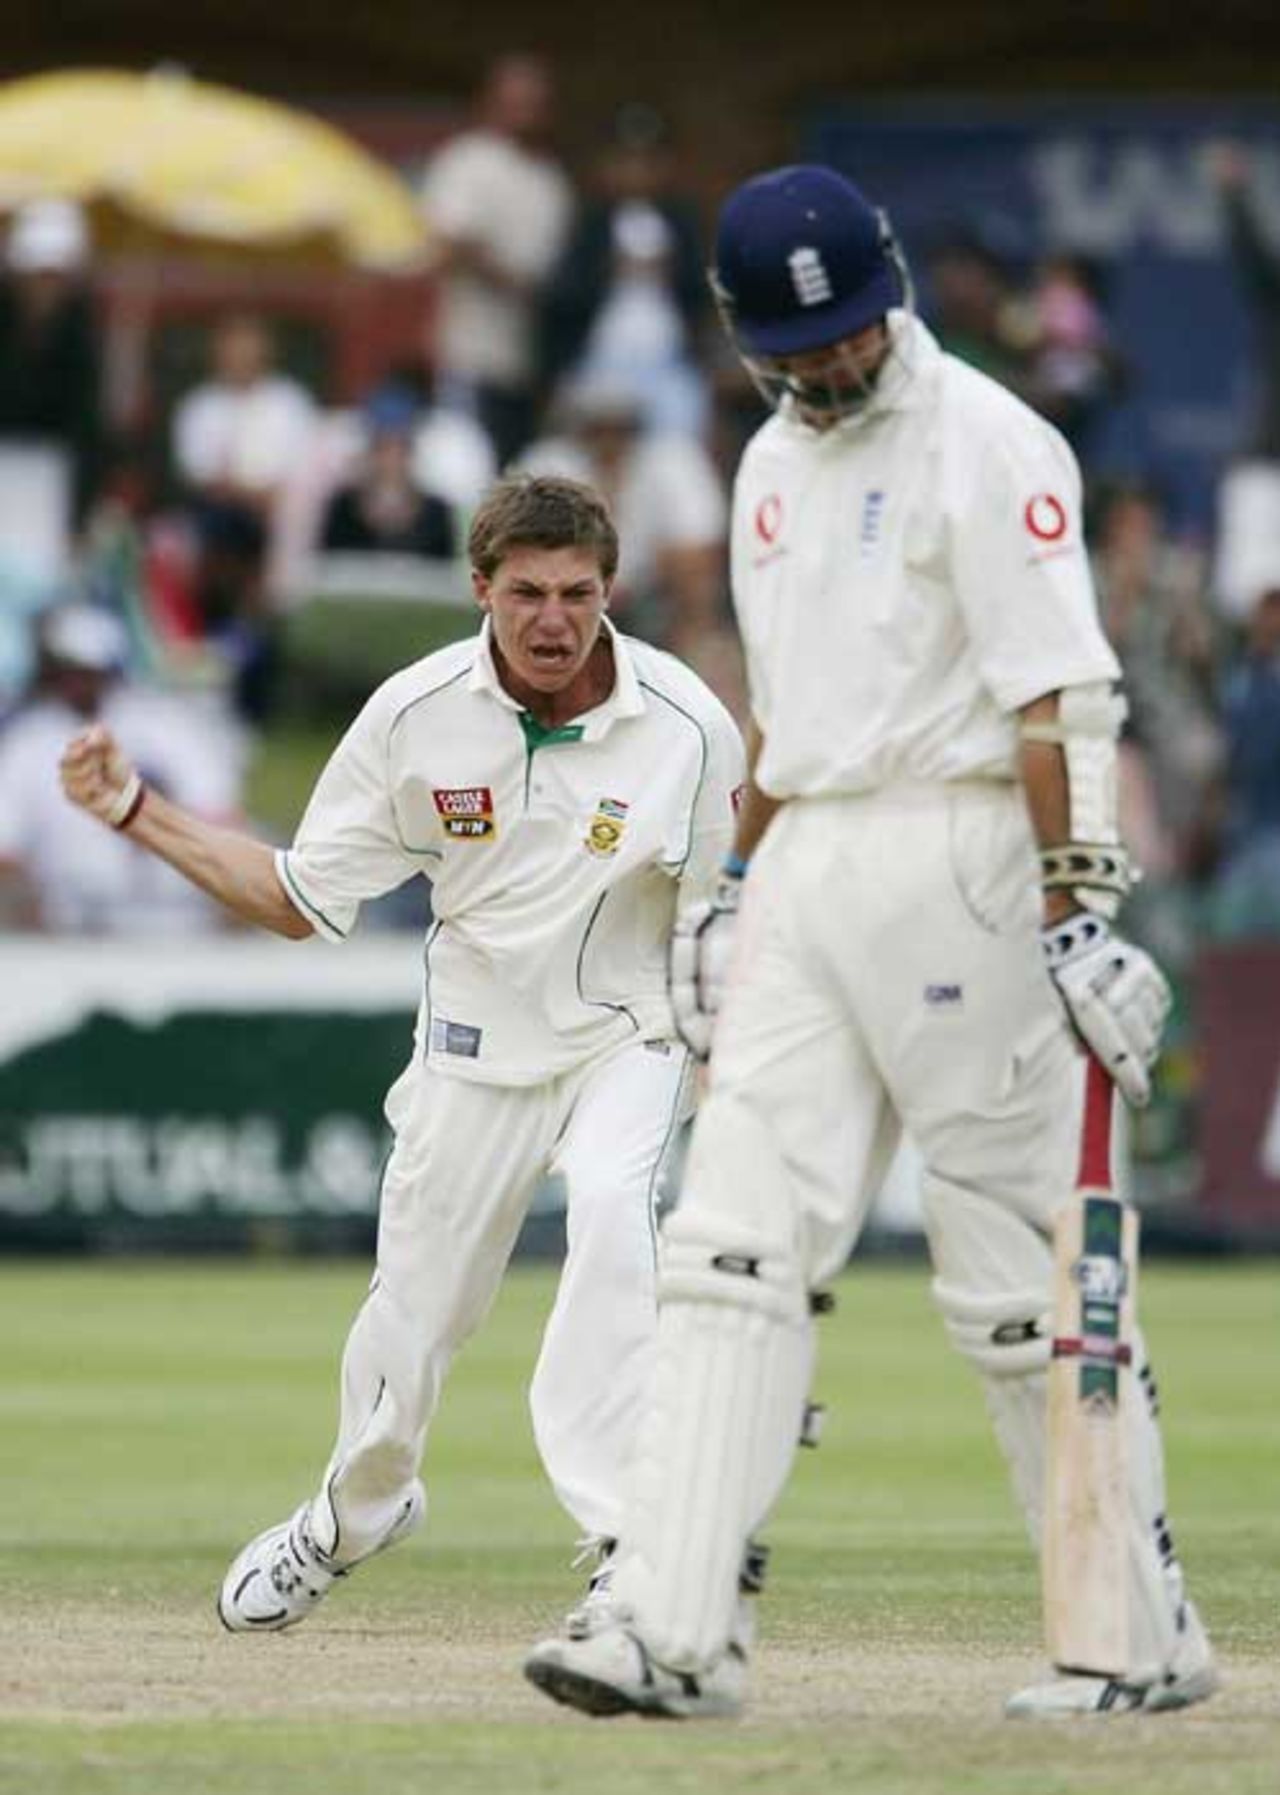 Dale Steyn celebrates bowling Michael Vaughan, first Test, South Africa v England, Port Elizabeth, 20 December 2004